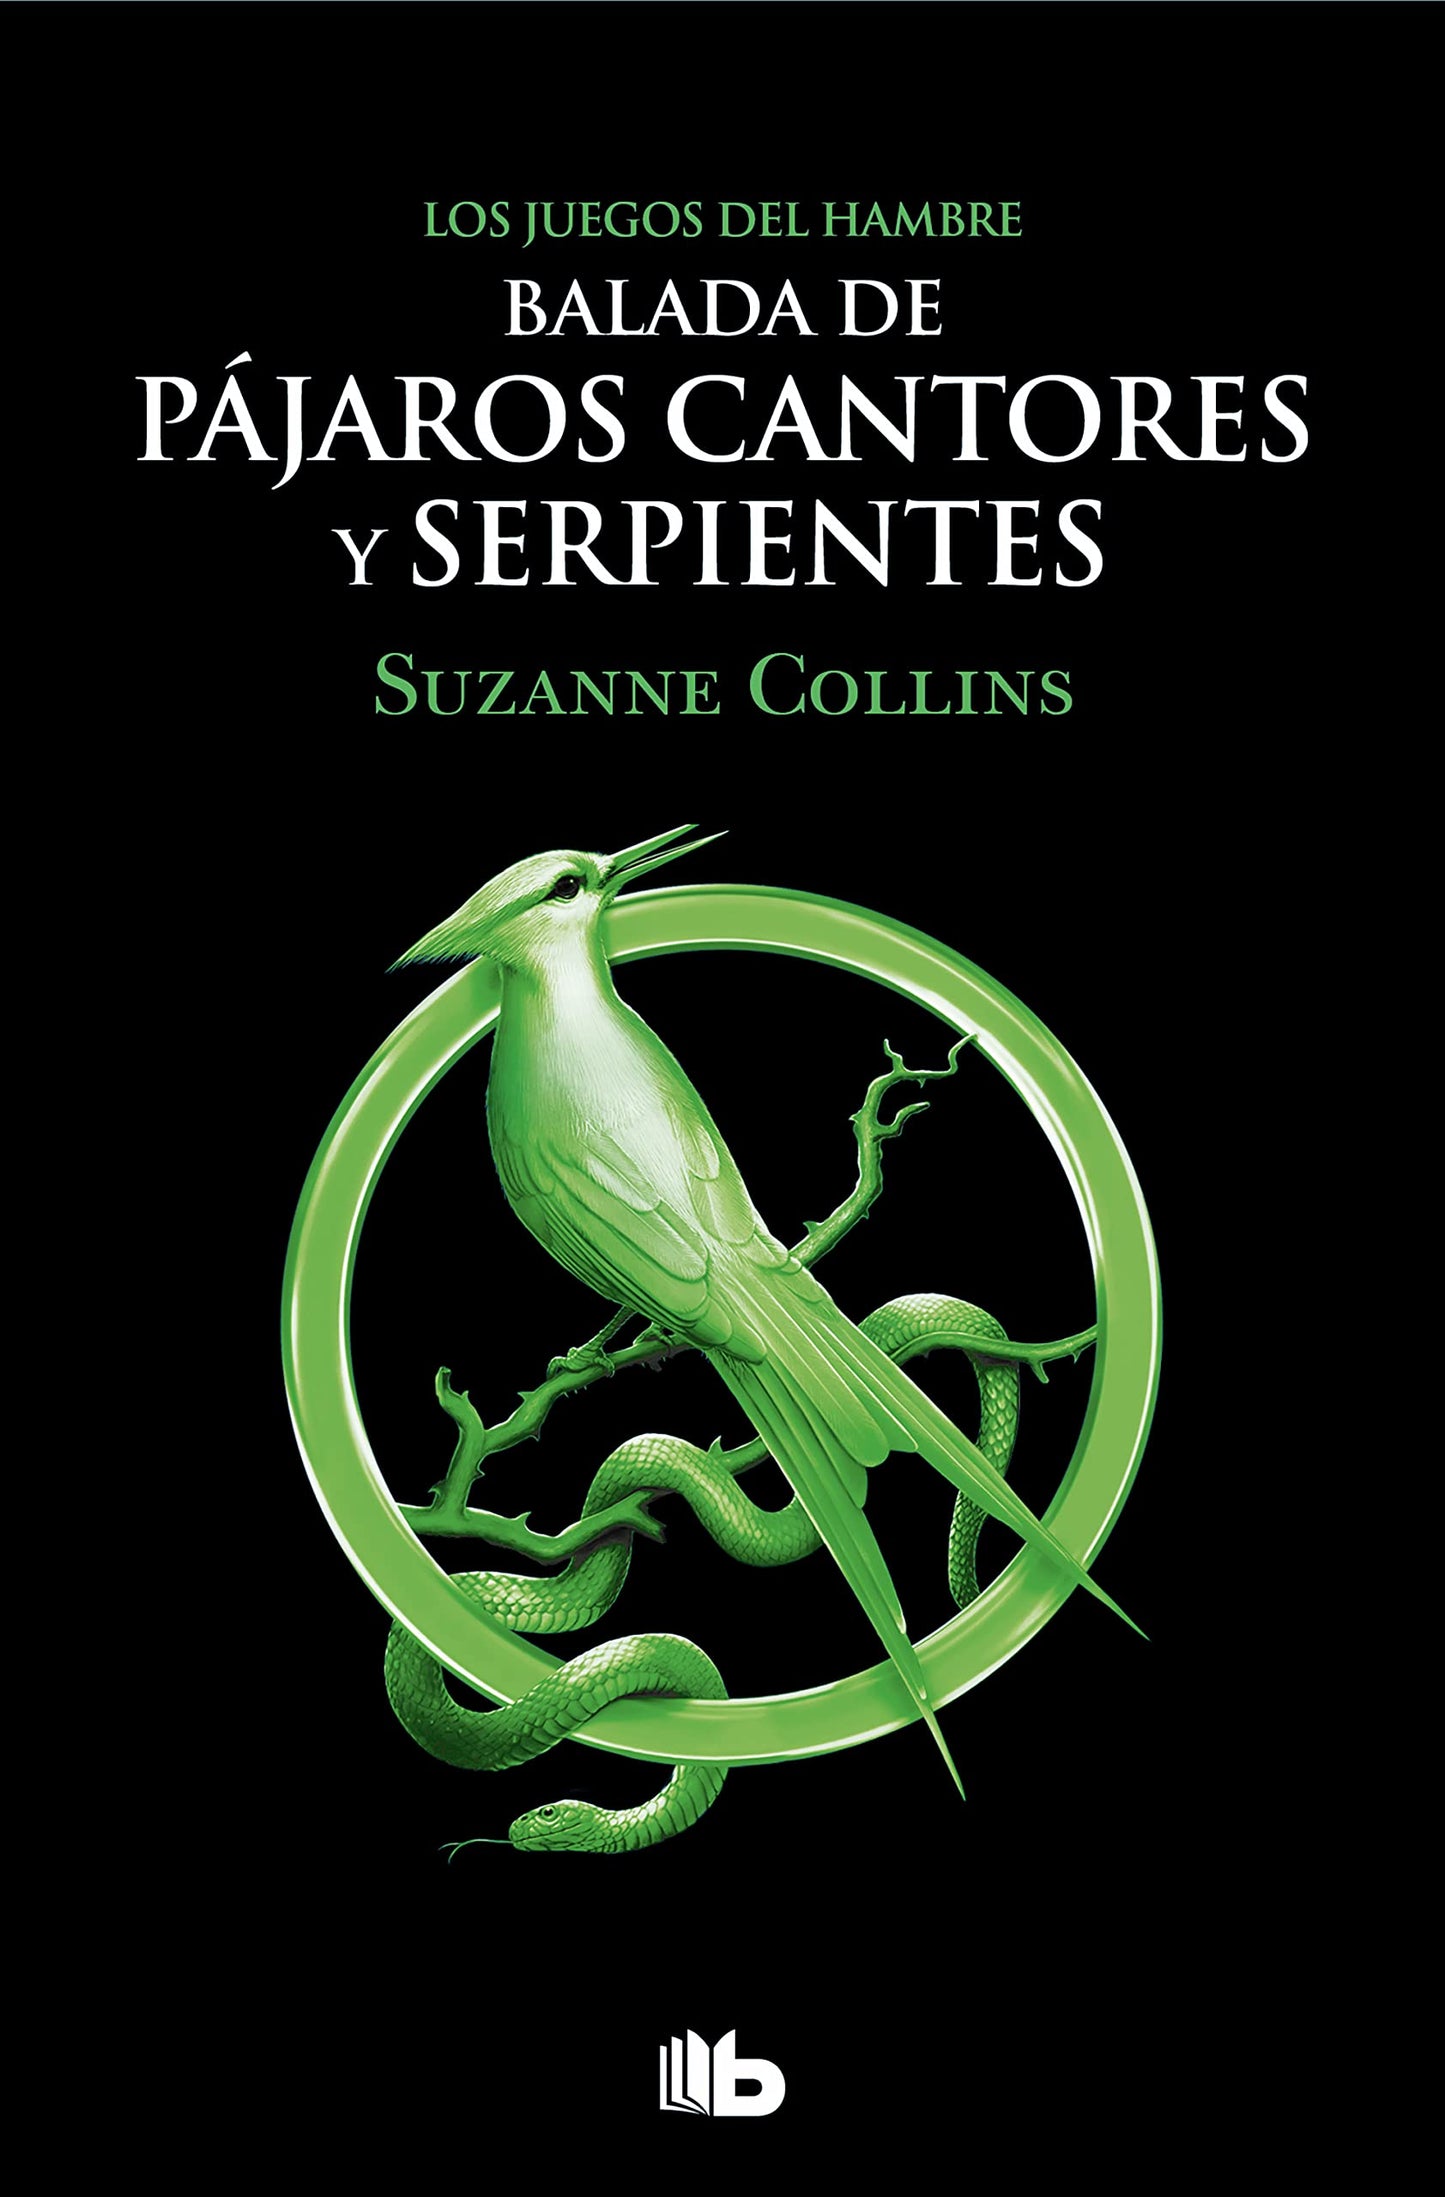 Balada De Pájaros Cantores Y Serpientes. Los Juegos Del Hambre Libro 0 - Suzanne Collins